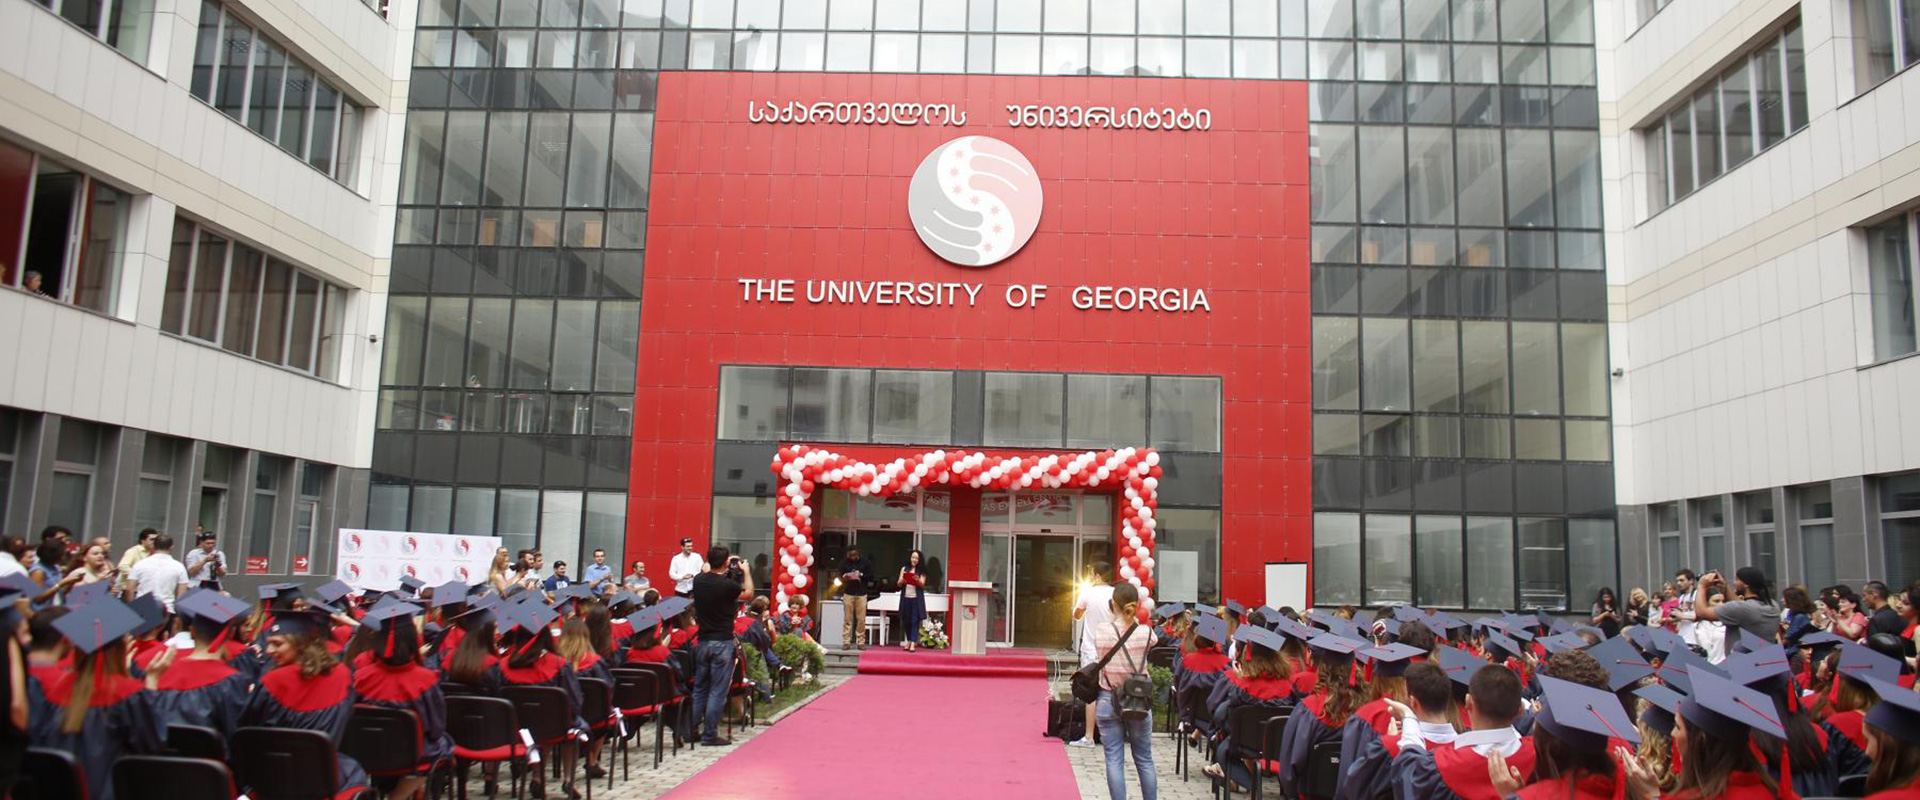 دانشگاه جورجیا 1 - مهاجرت تحصیلی به گرجستان